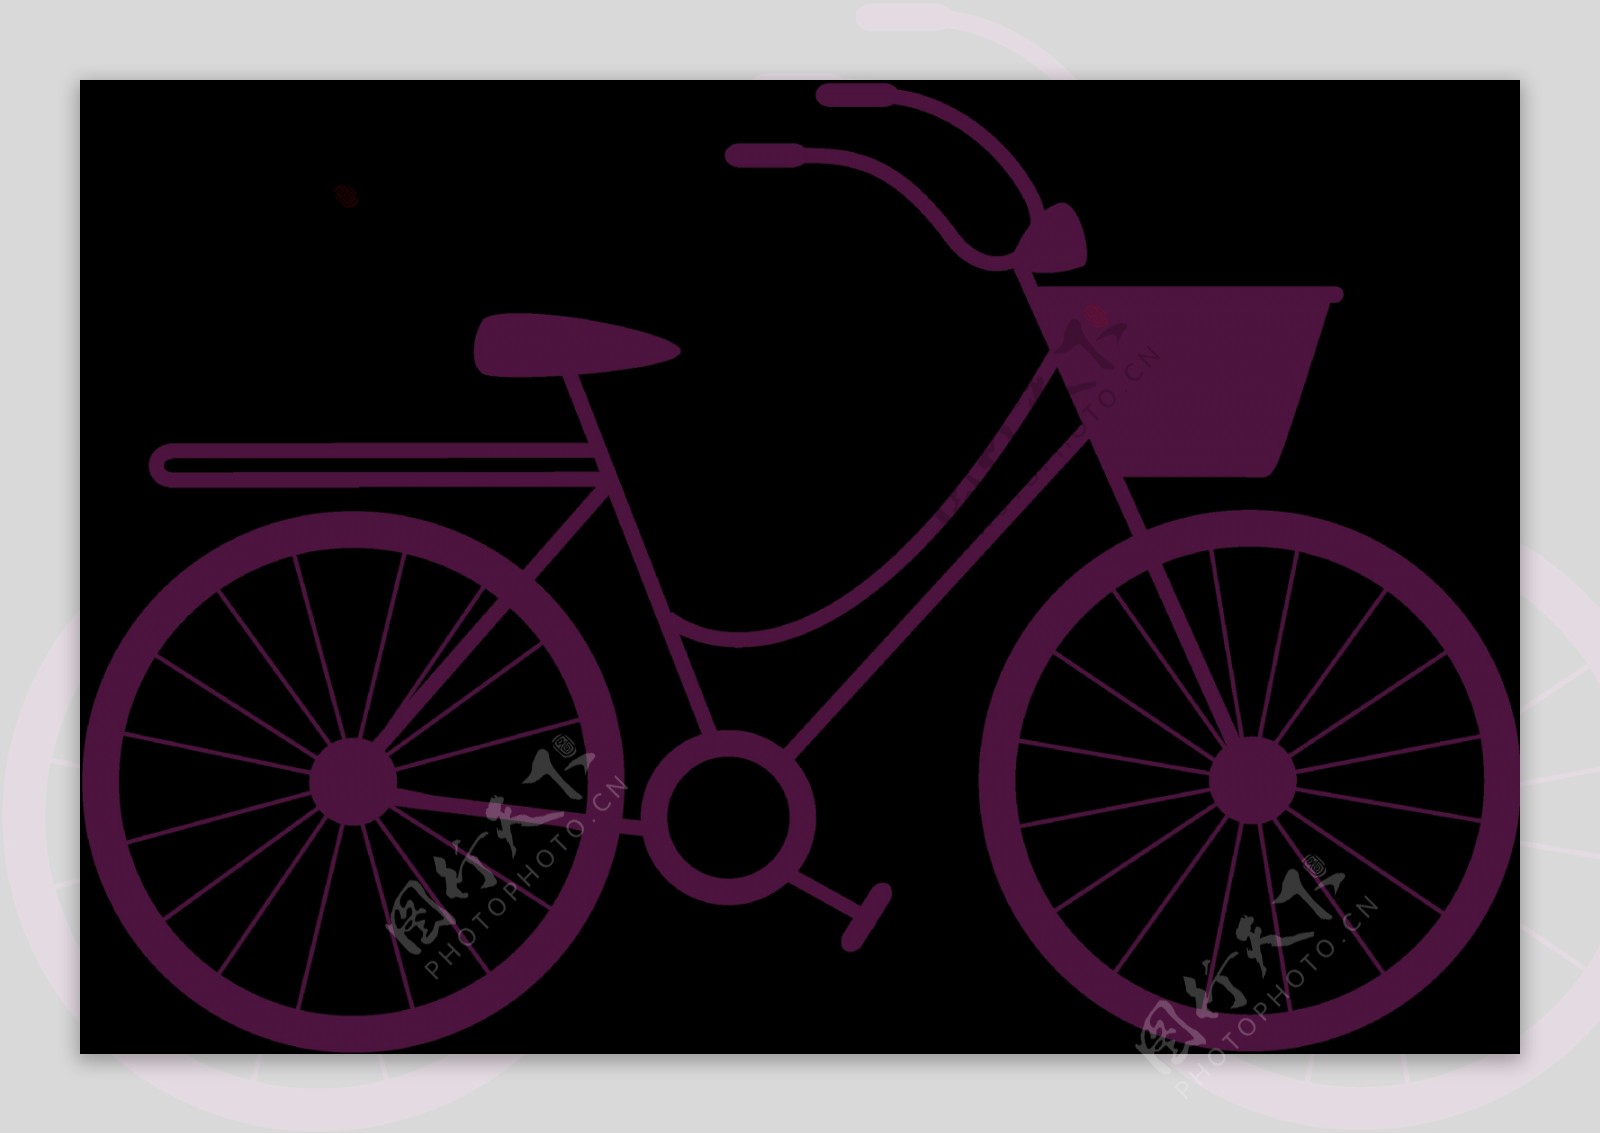 壁纸 紫色自行车 5120x2880 UHD 5K 高清壁纸, 图片, 照片